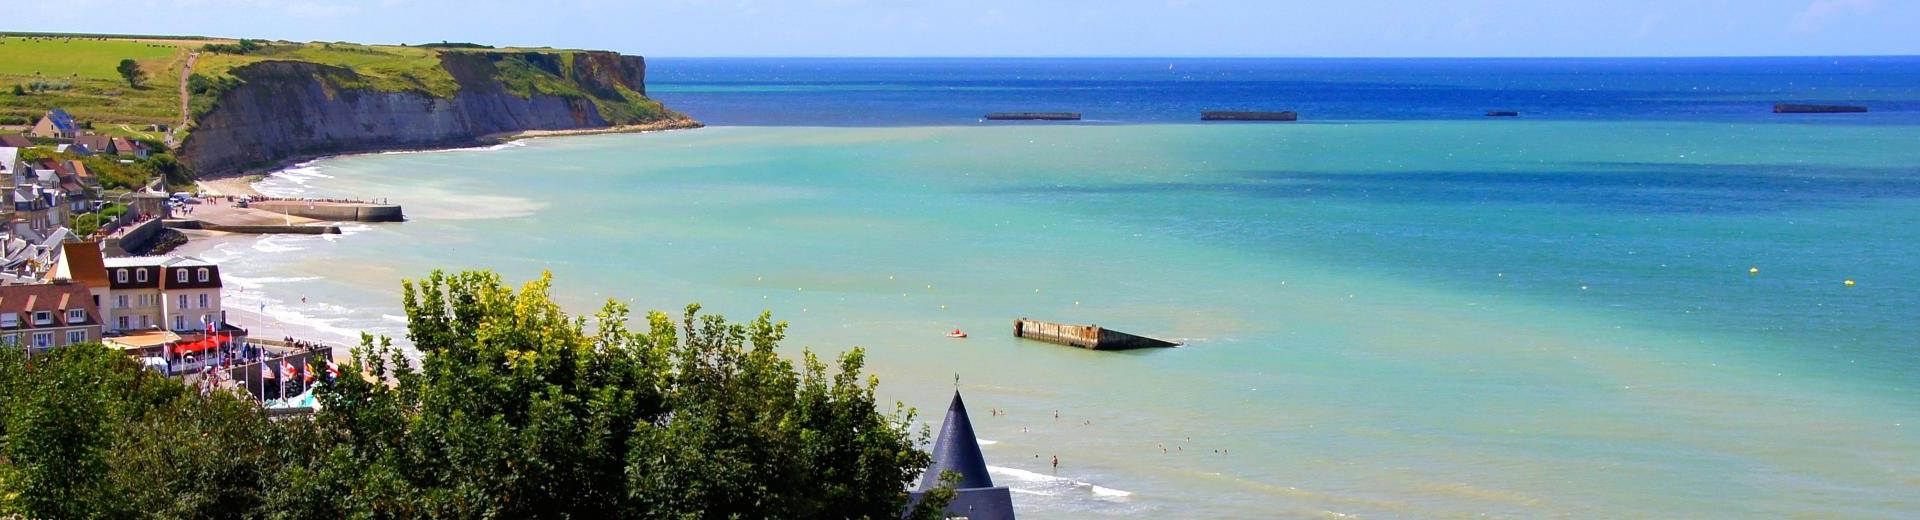 Vakantiehuis Le Havre - tweede havenstad in Frankrijk - EuroRelais